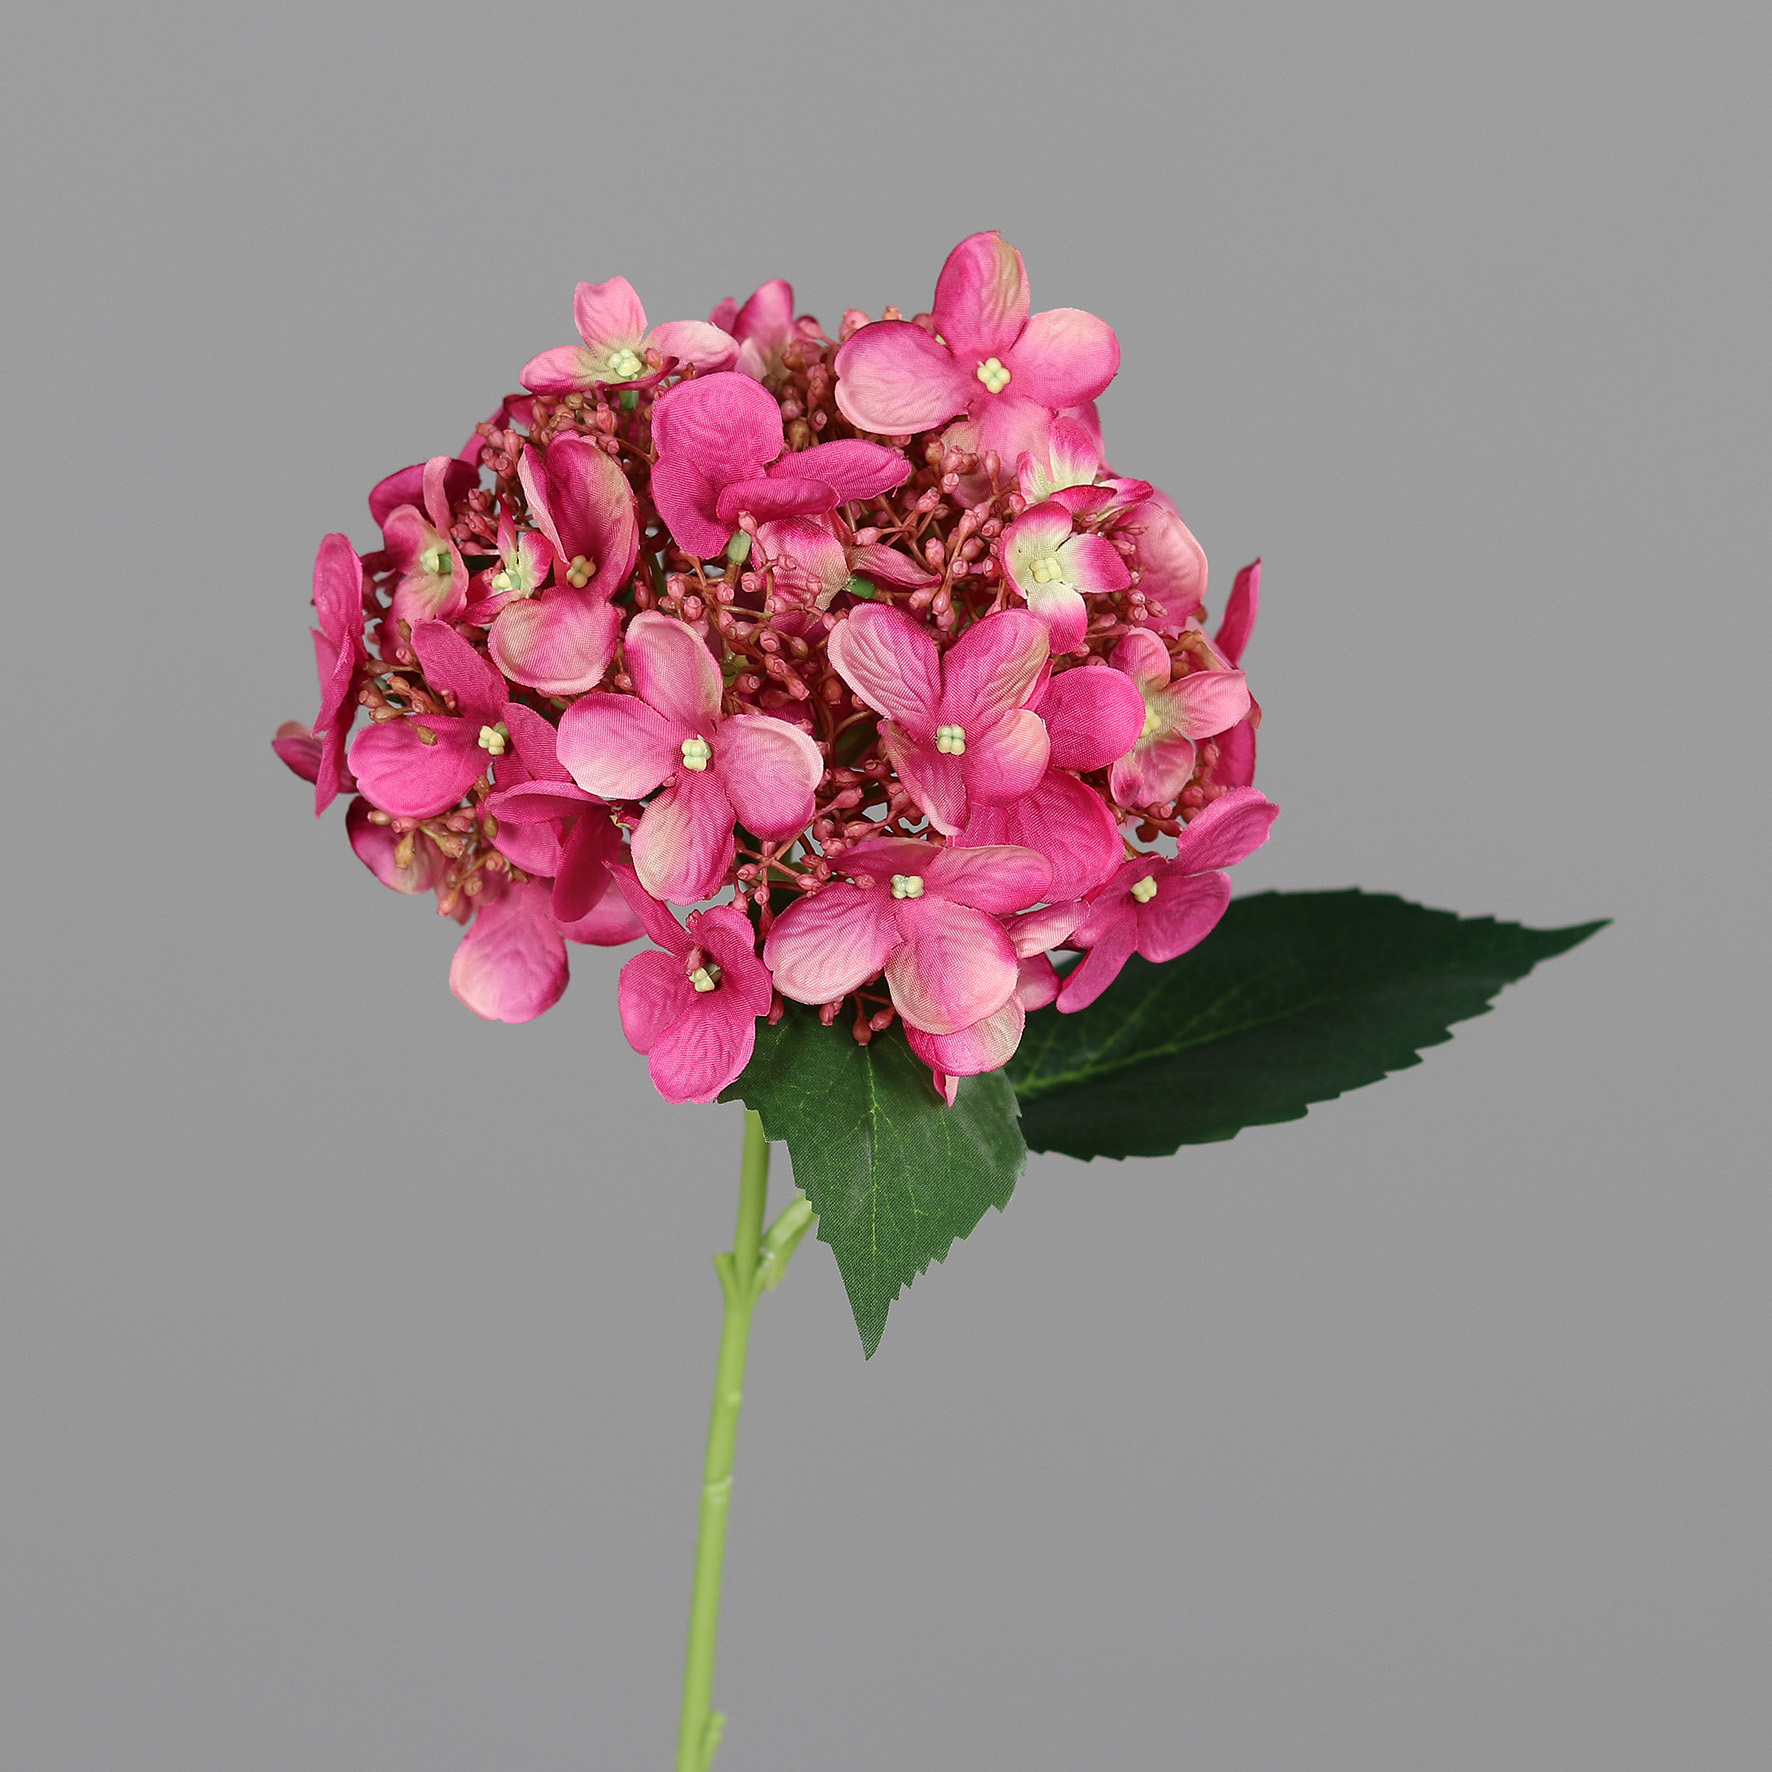 Hortensie 32cm pink DP Kunstlbumen künstliche Blumen Hortensien Hydrangea